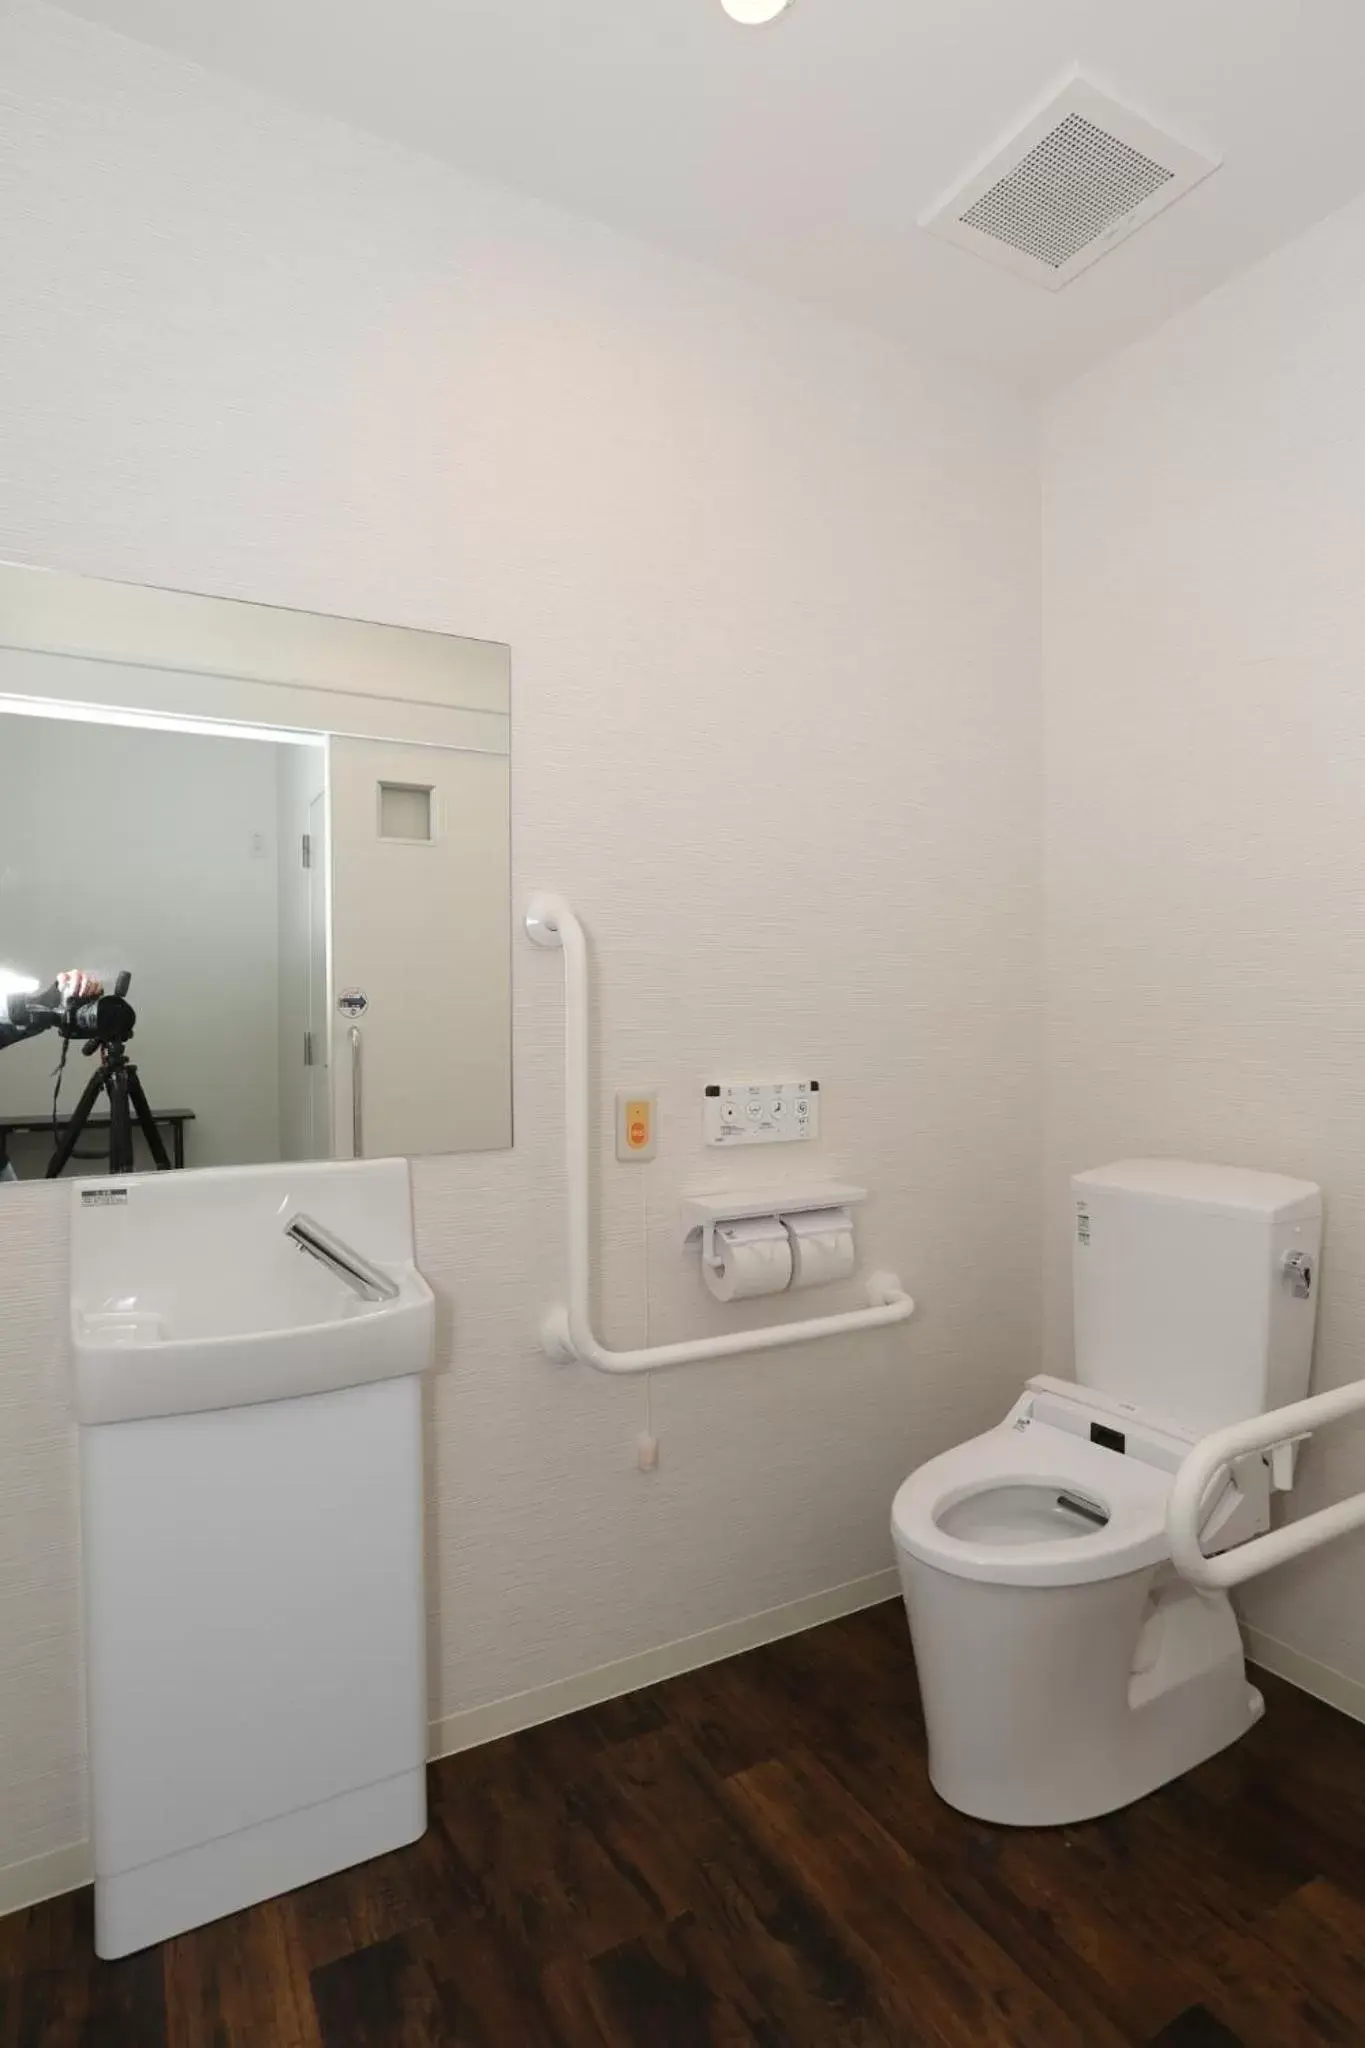 Area and facilities, Bathroom in Hotel Ninestates Hakata